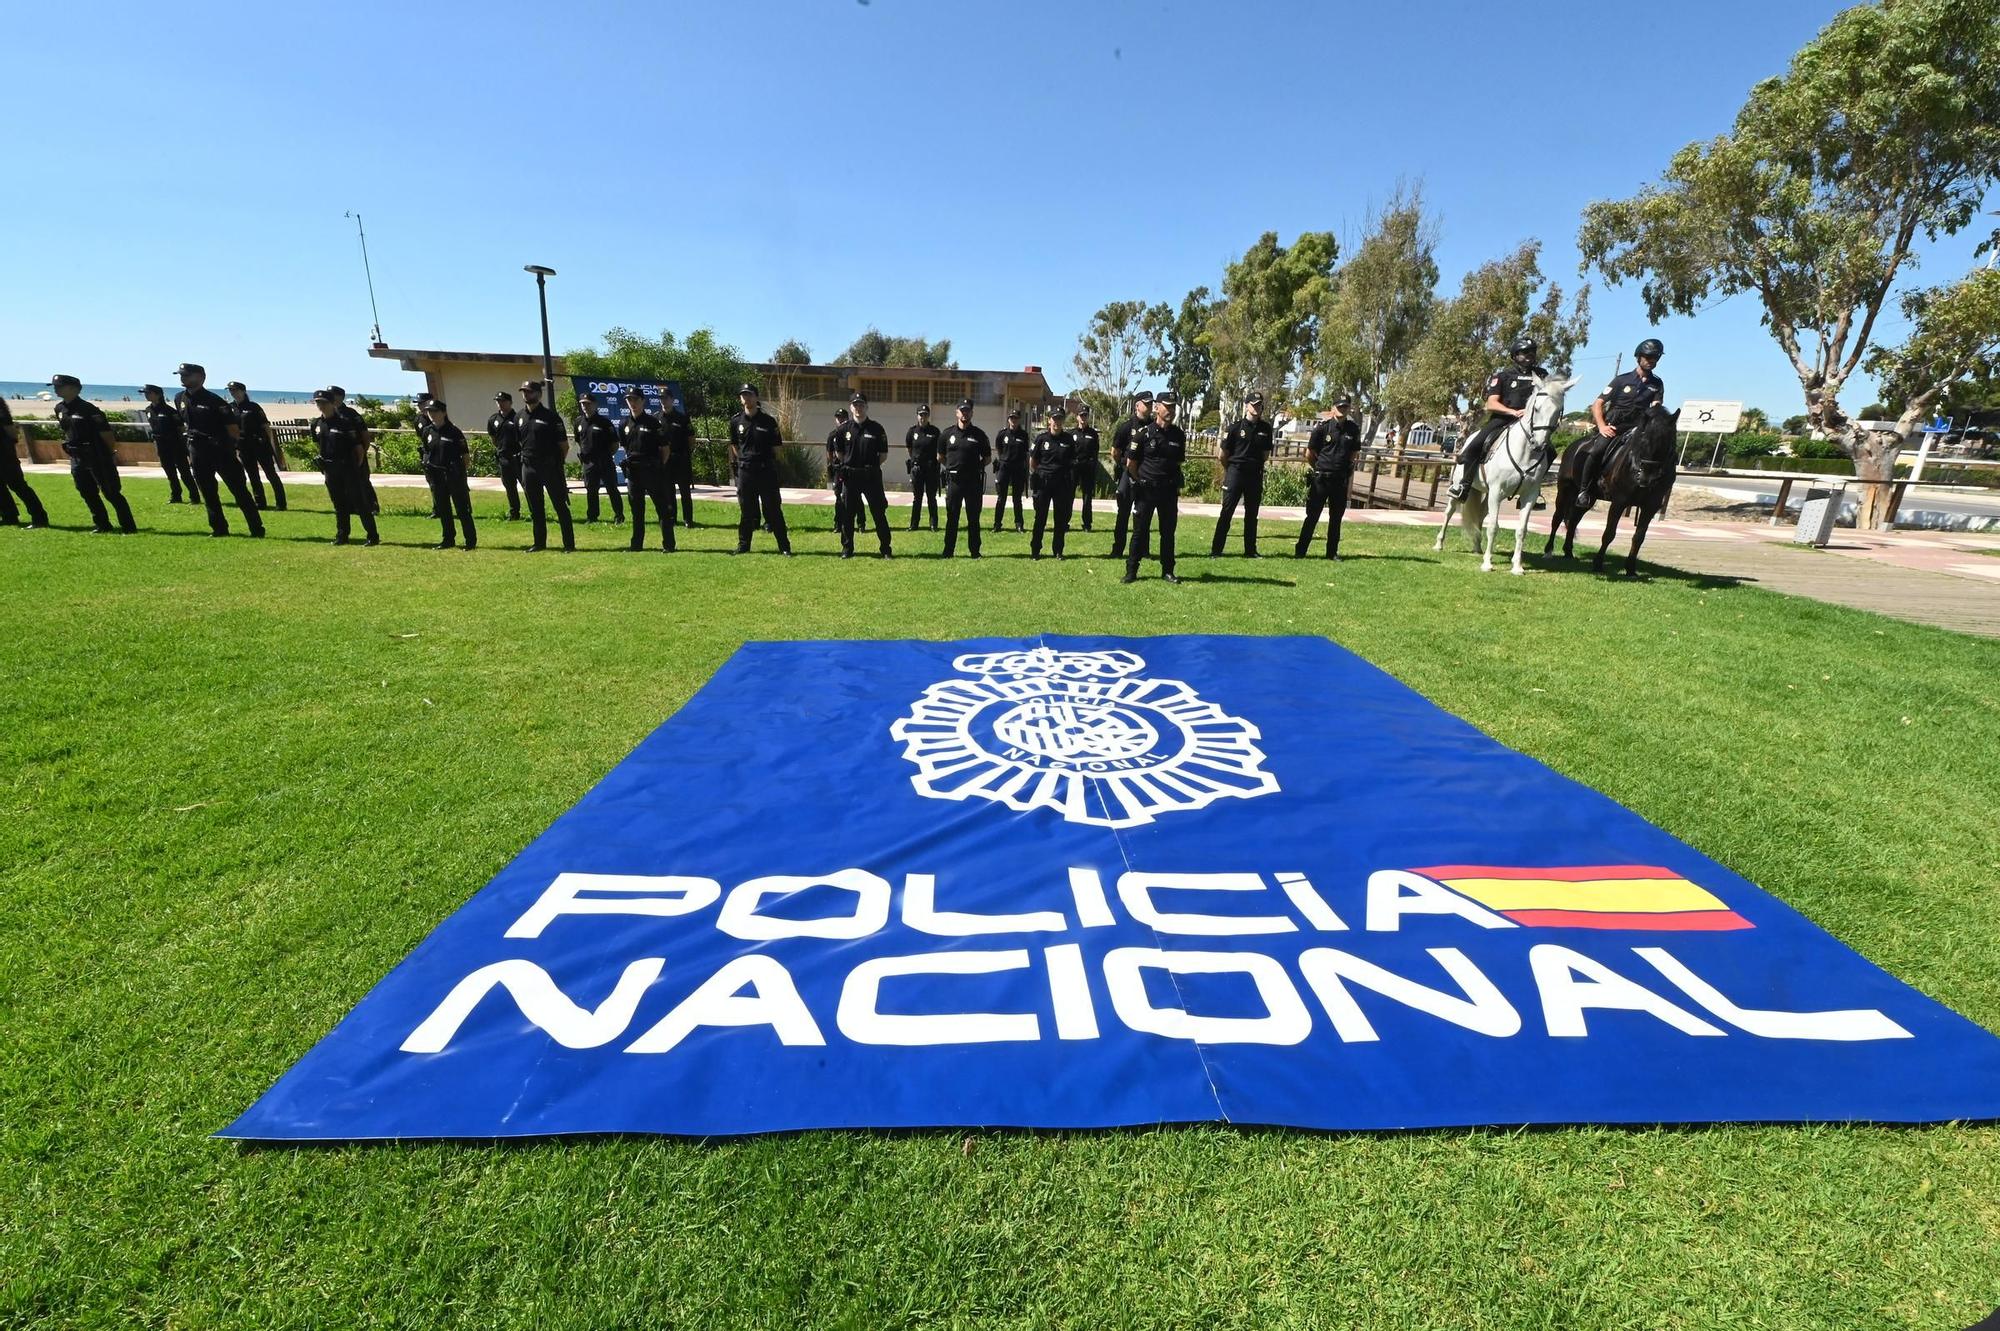 Dispositivo operación verano Castellón Policía Nacional